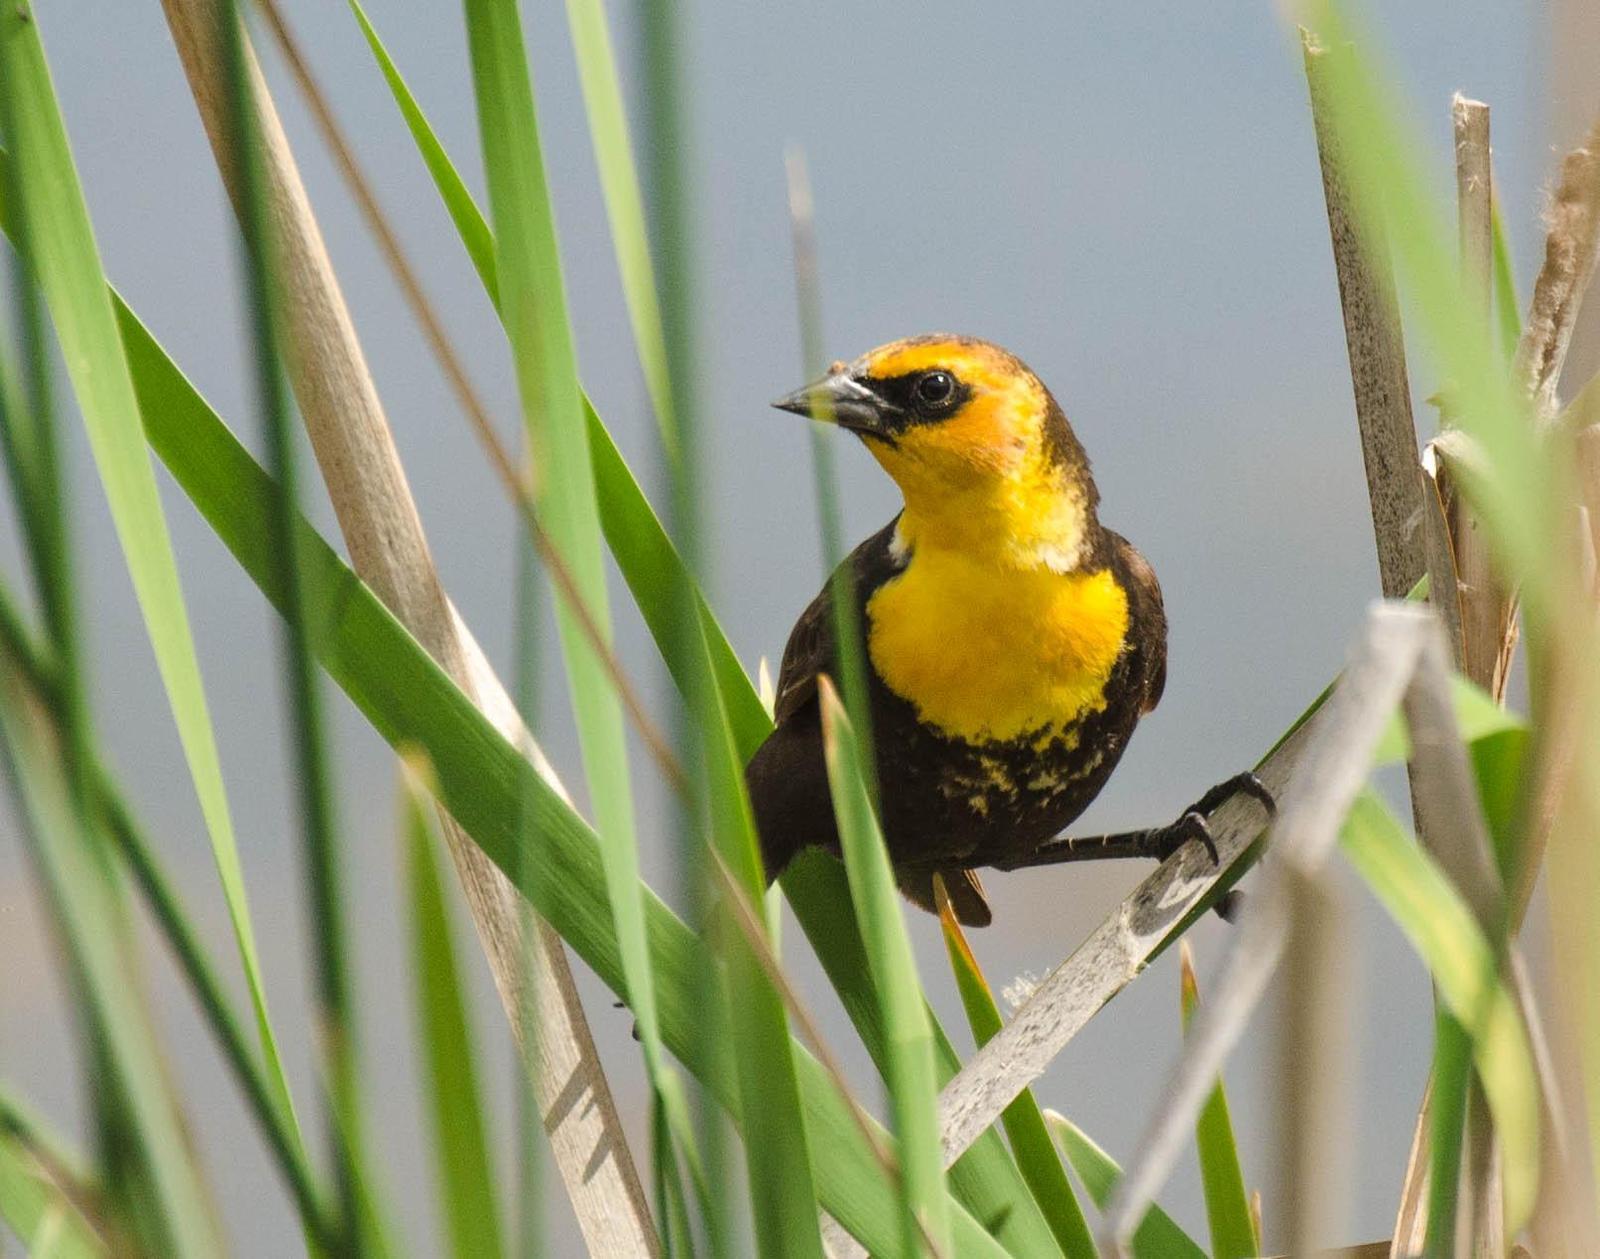 Yellow-headed Blackbird Photo by Scott Yerges